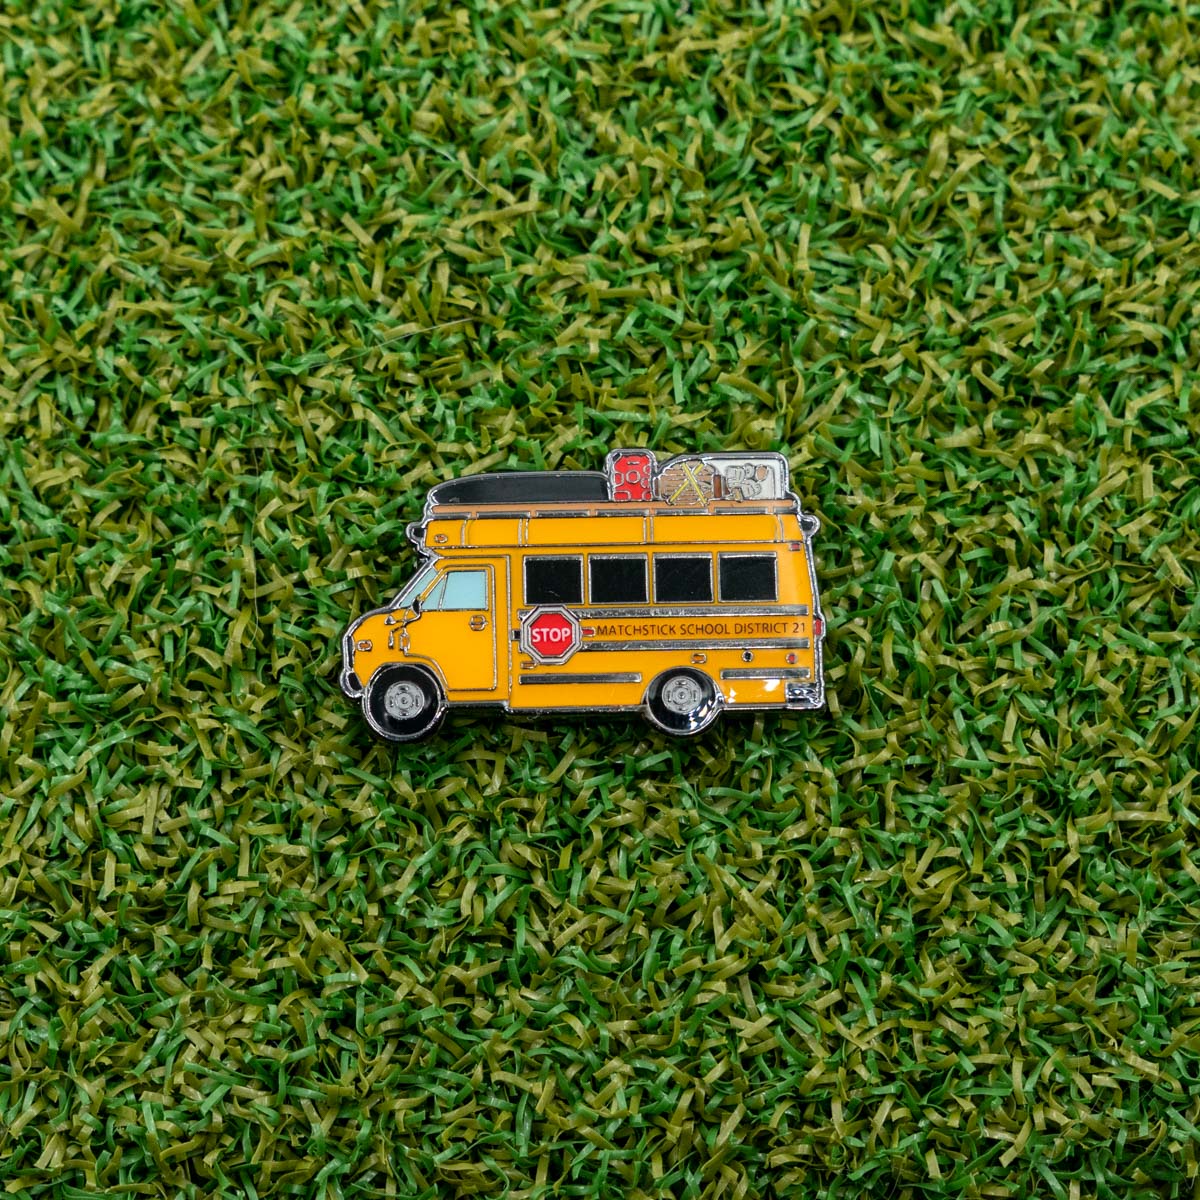 school bus golf ball marker on grass